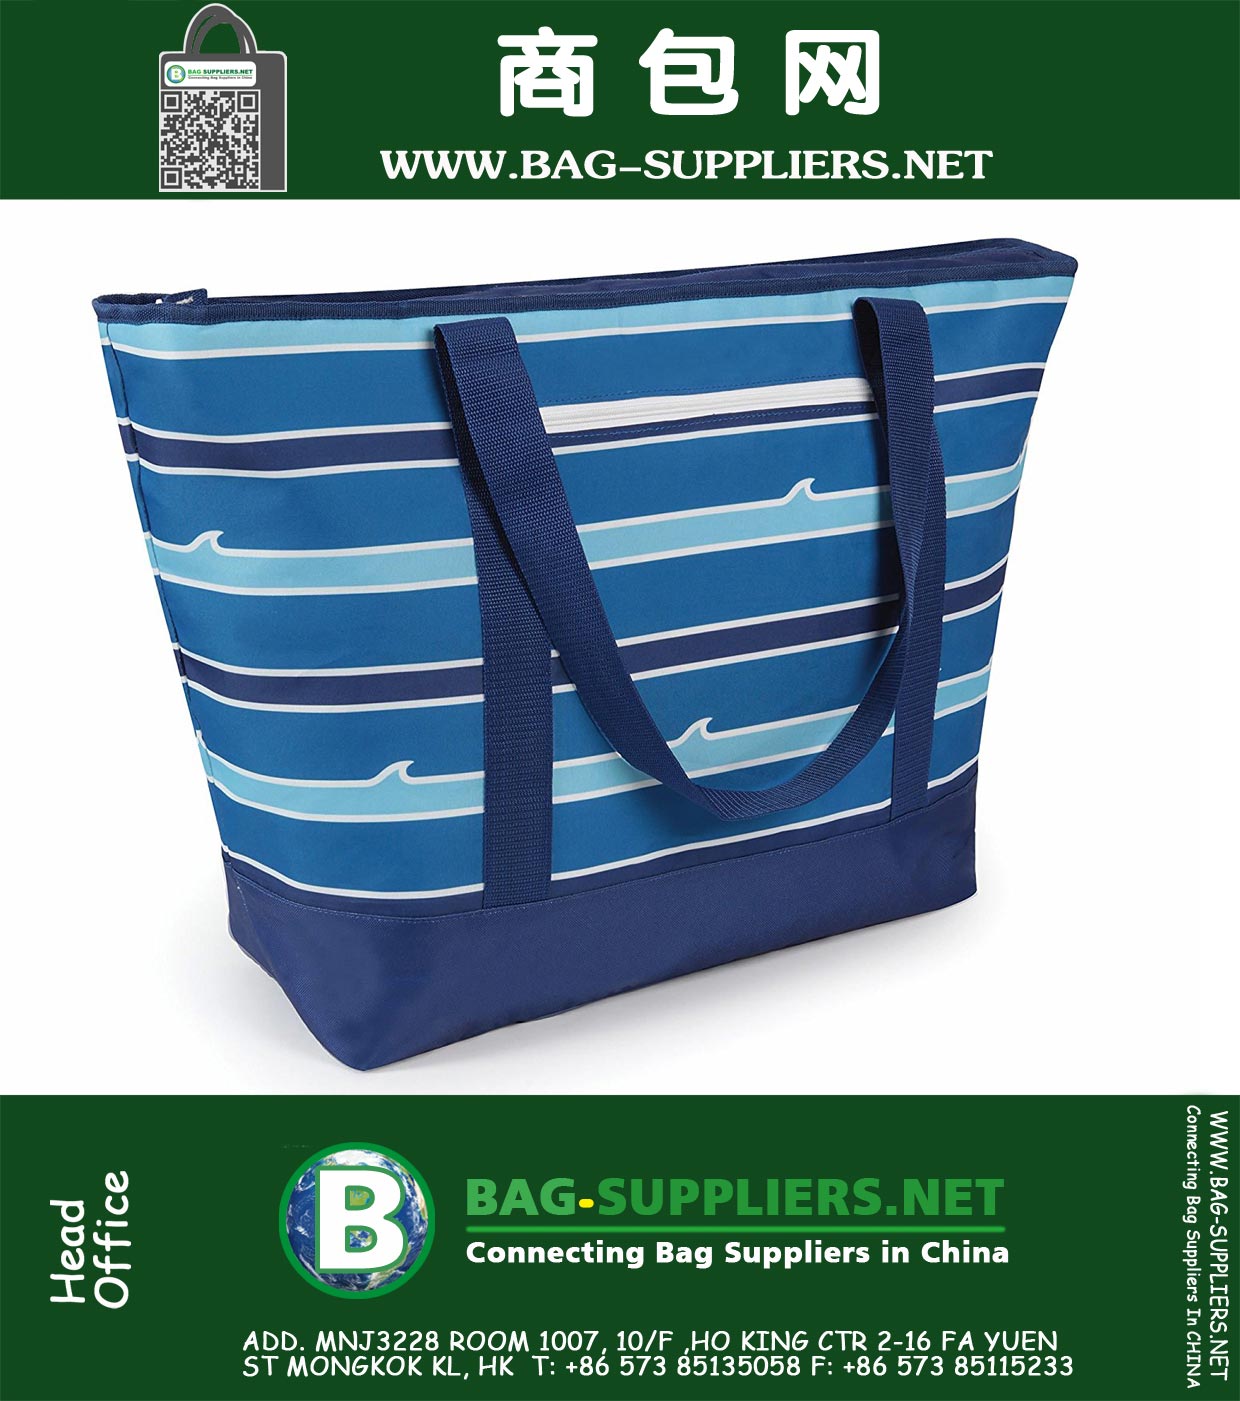 12 галлонов с изоляцией Mega Tote Blue Bag для транспортировки замороженных продуктов, скоропортящихся продуктов и горячей пищи